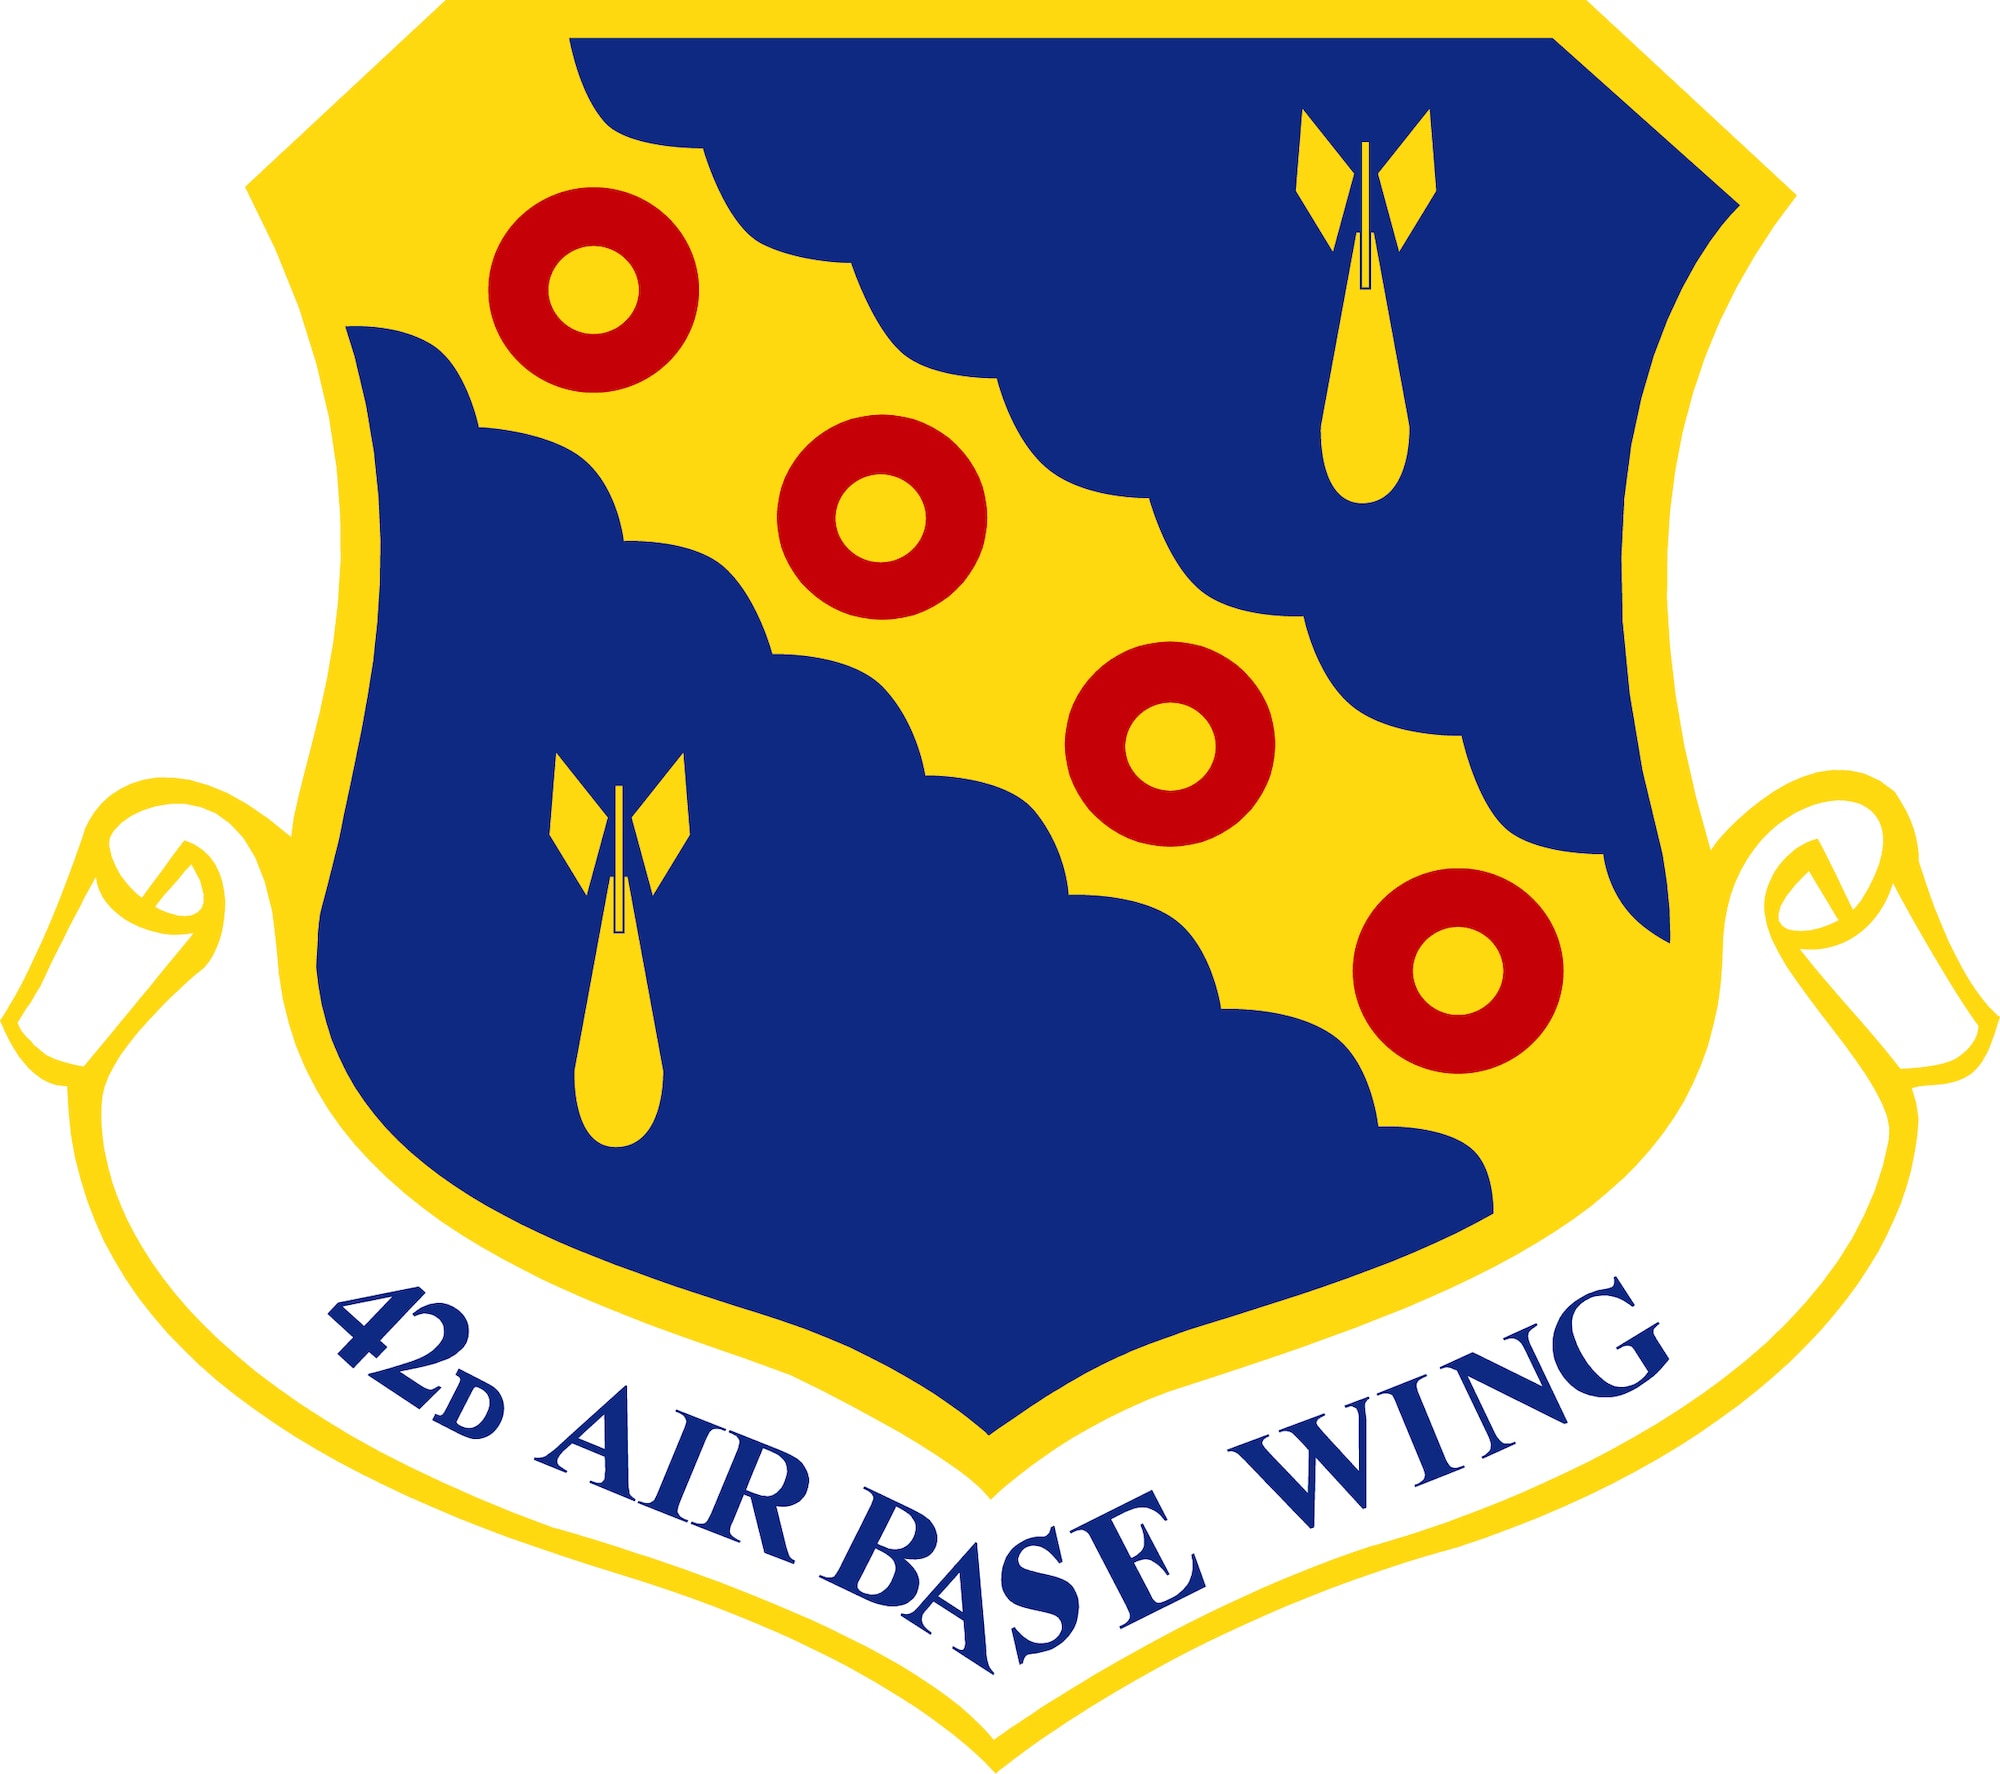 42nd Air Base Wing Shield